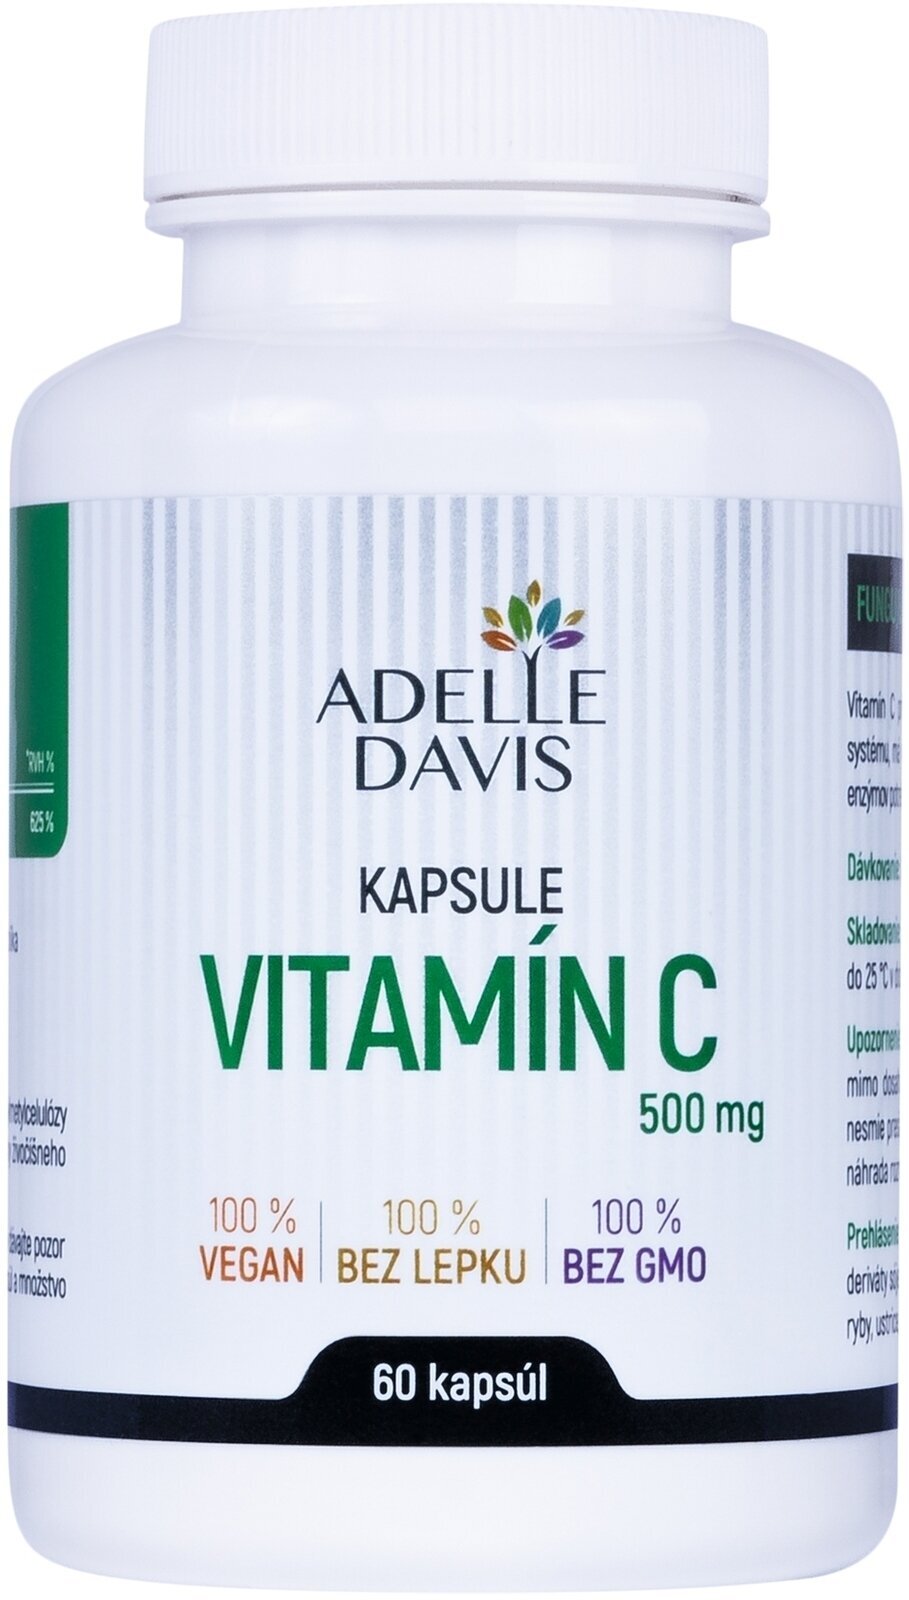 C Vitamin Adelle Davis Vitamin C C Vitamin